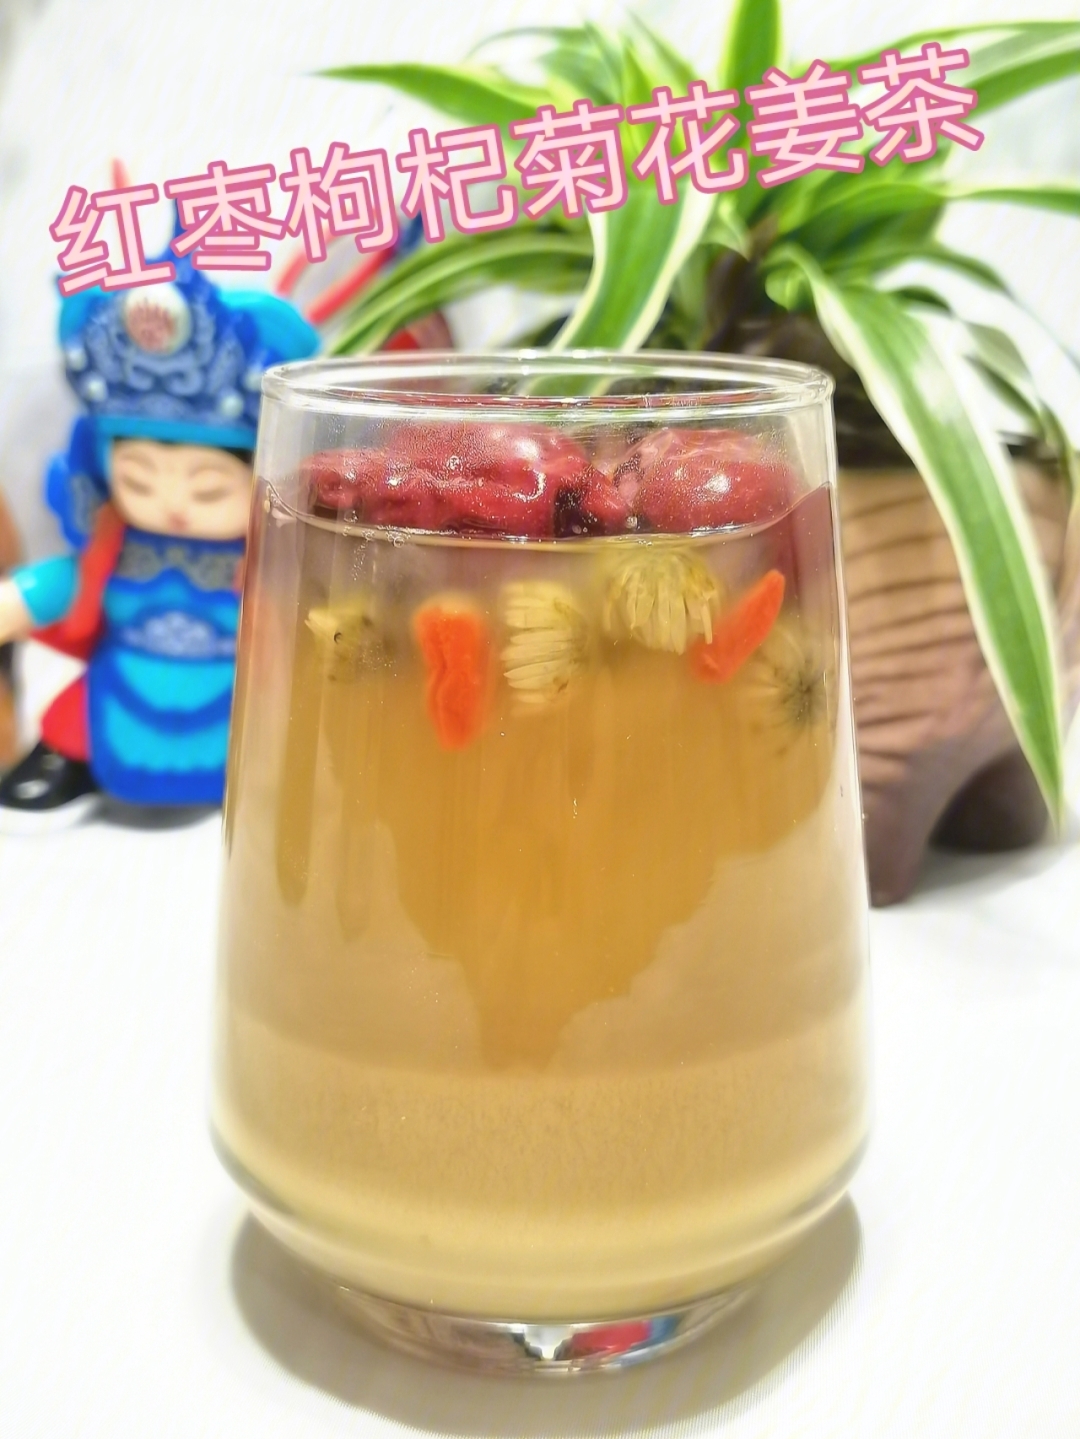 夏日祛湿红枣枸杞菊花姜茶预防感冒